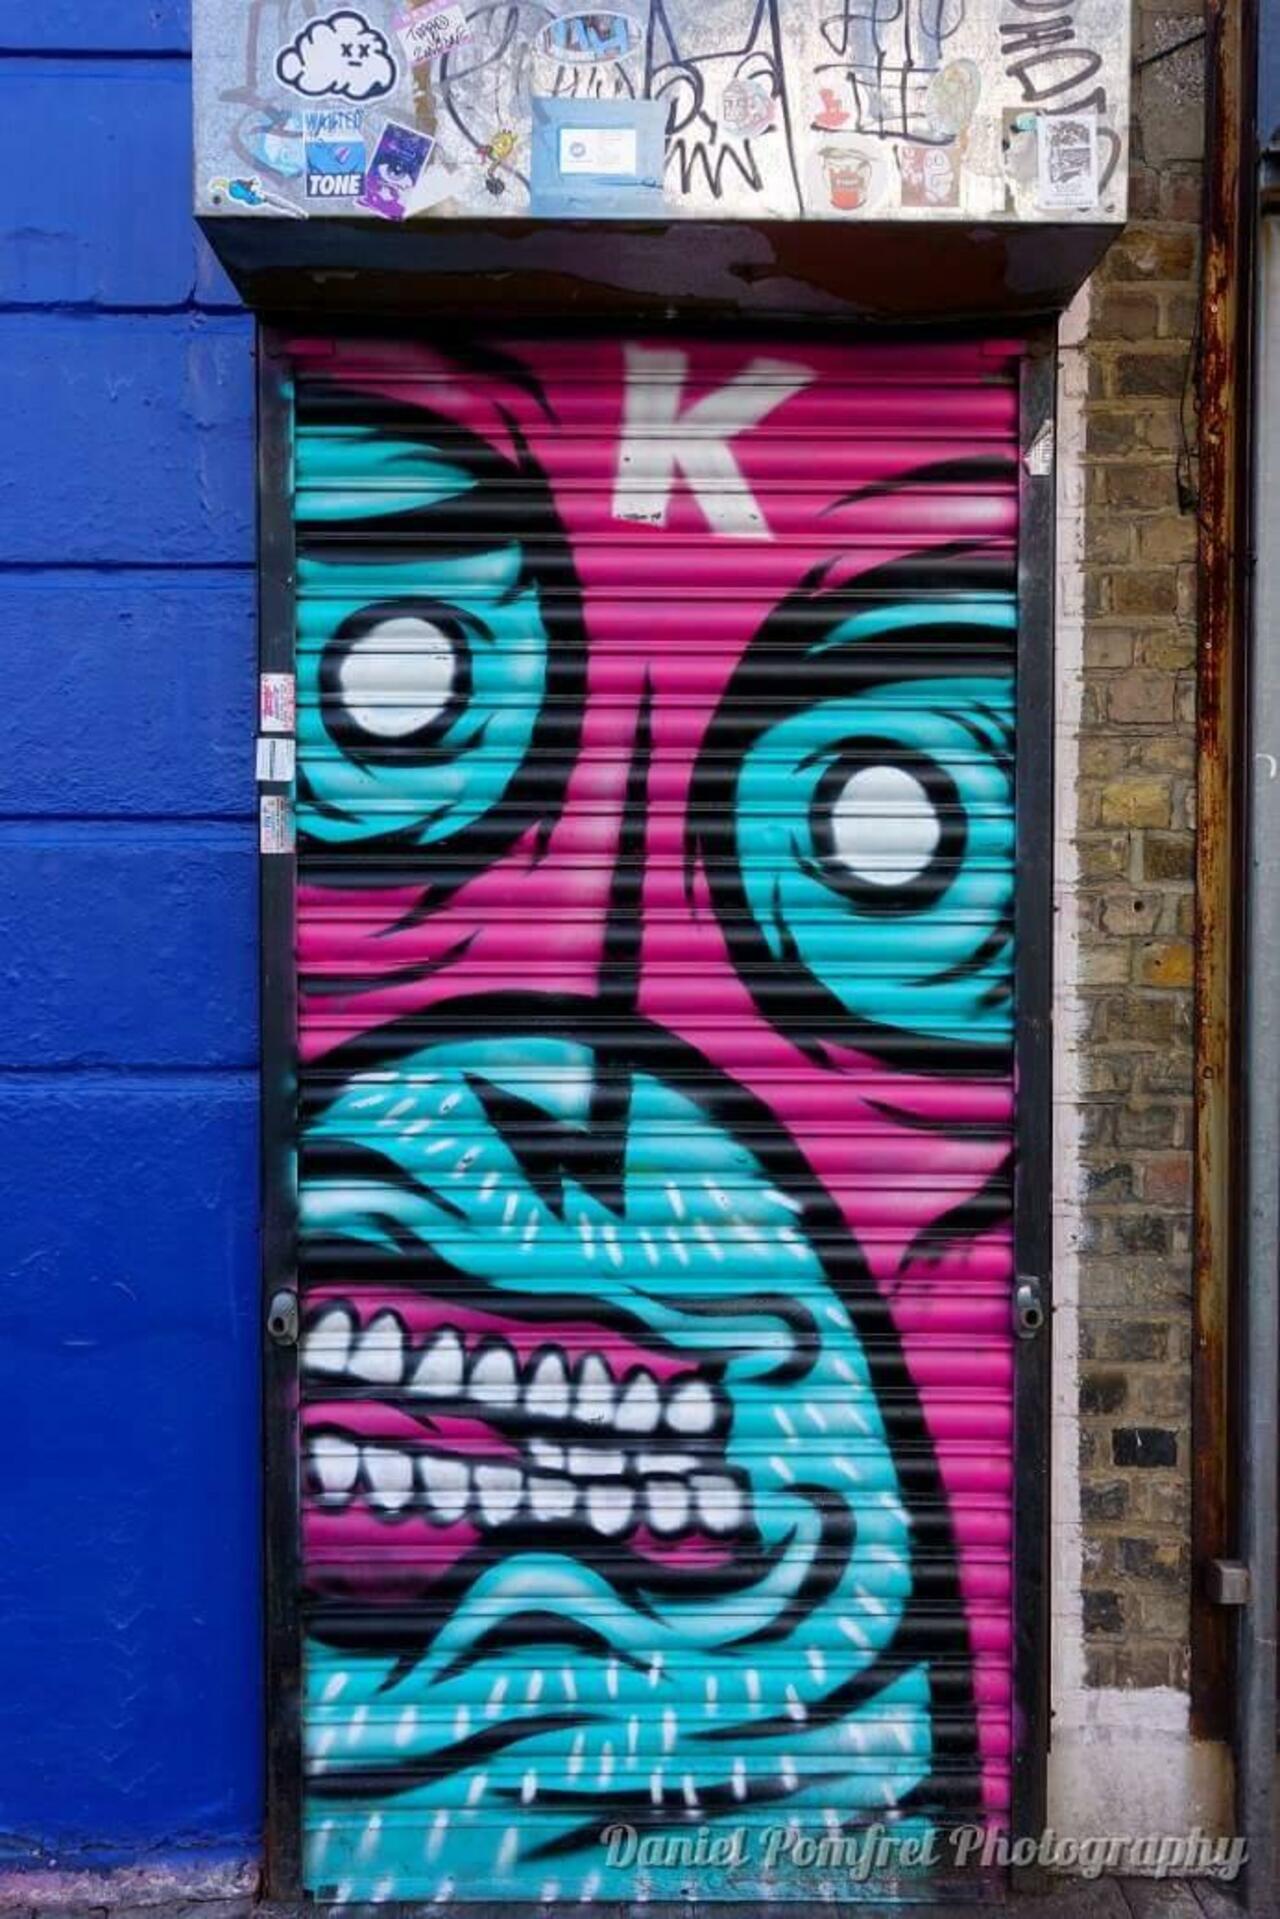 RT @DanielPomfret: Street Art by Captain Kris. #streetart #graffiti #London #urbanlondon #camden http://t.co/sLQdSk3HWp